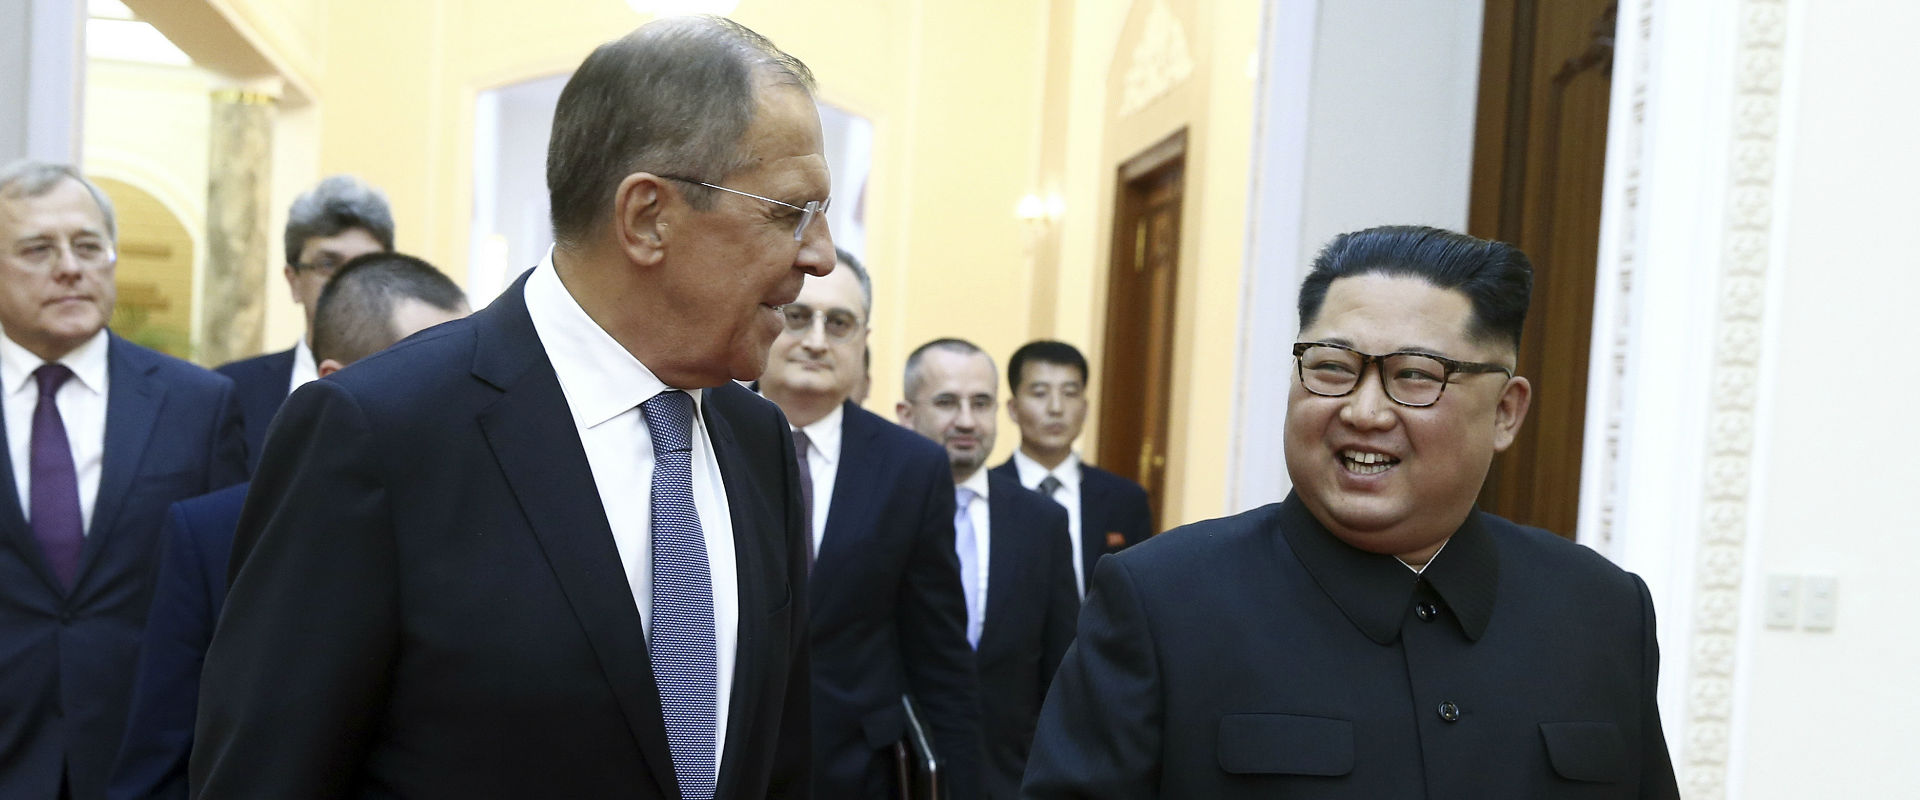 קים ולברוב בפגישה בצפון קוריאה